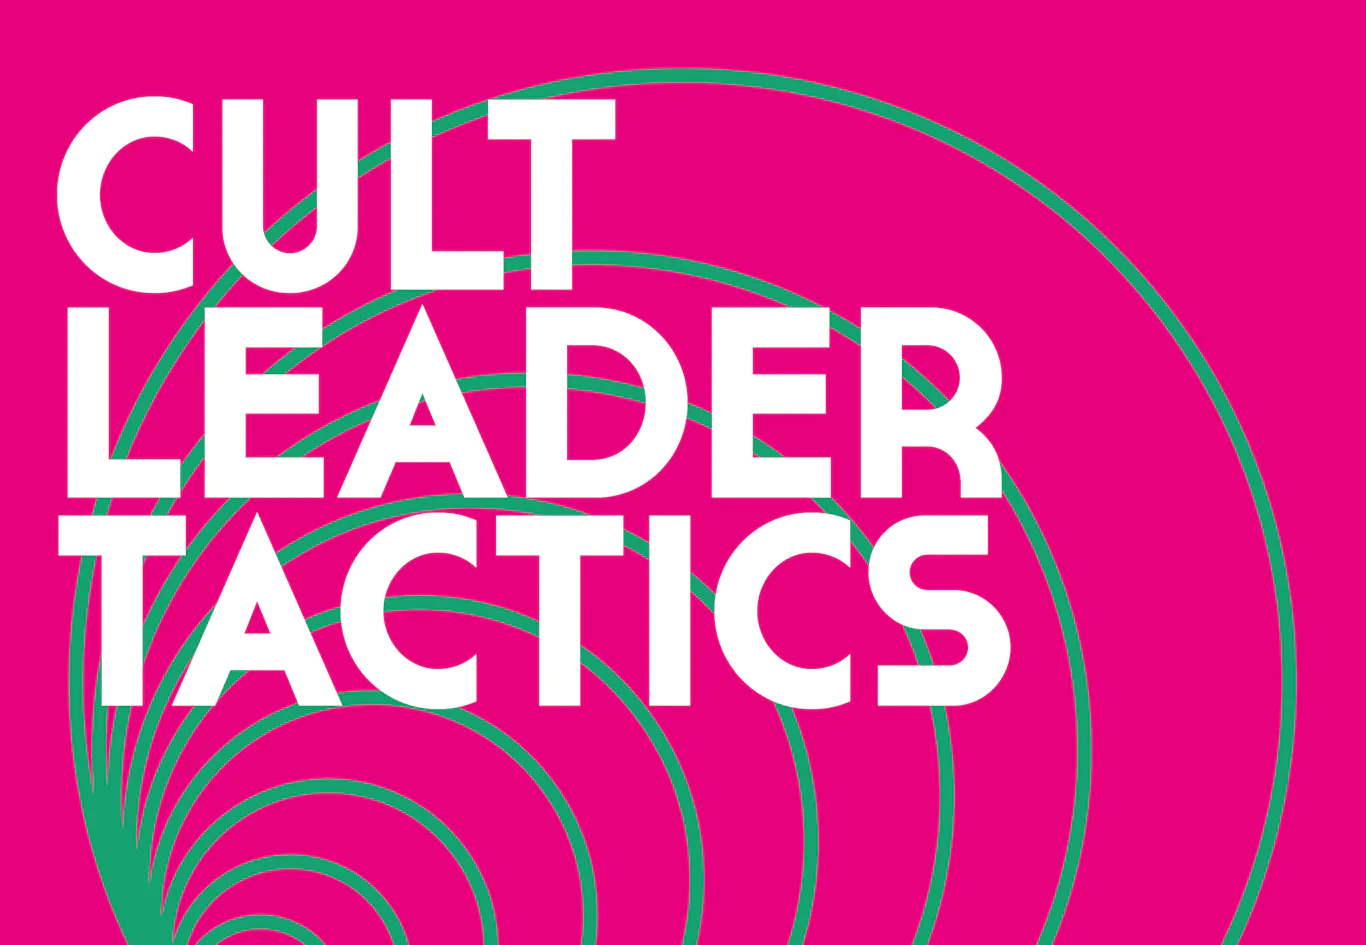 ALBUM REVIEW: Paul Draper - Cult Leader Tactics 